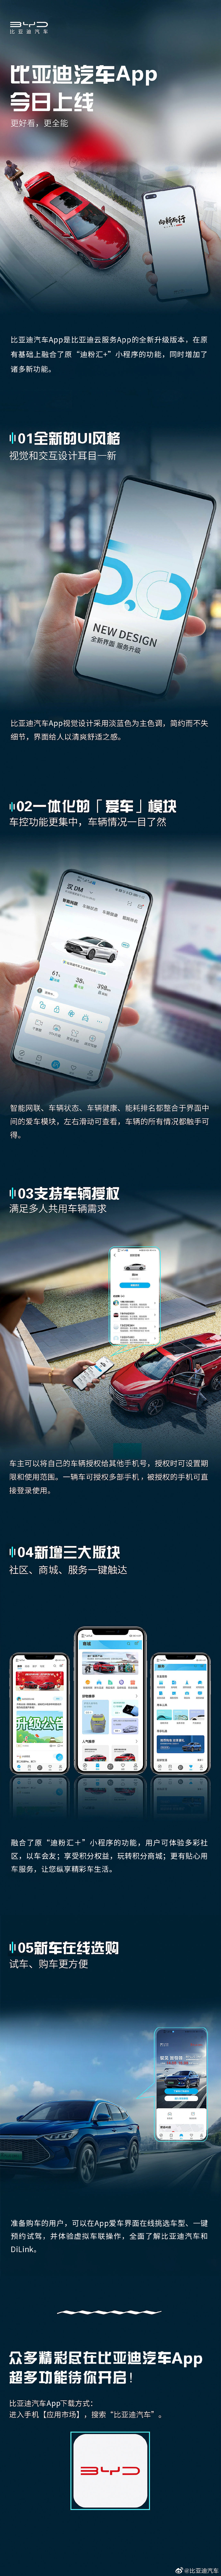 比亚迪汽车 App 上线：提供新车选购、远程车控功能